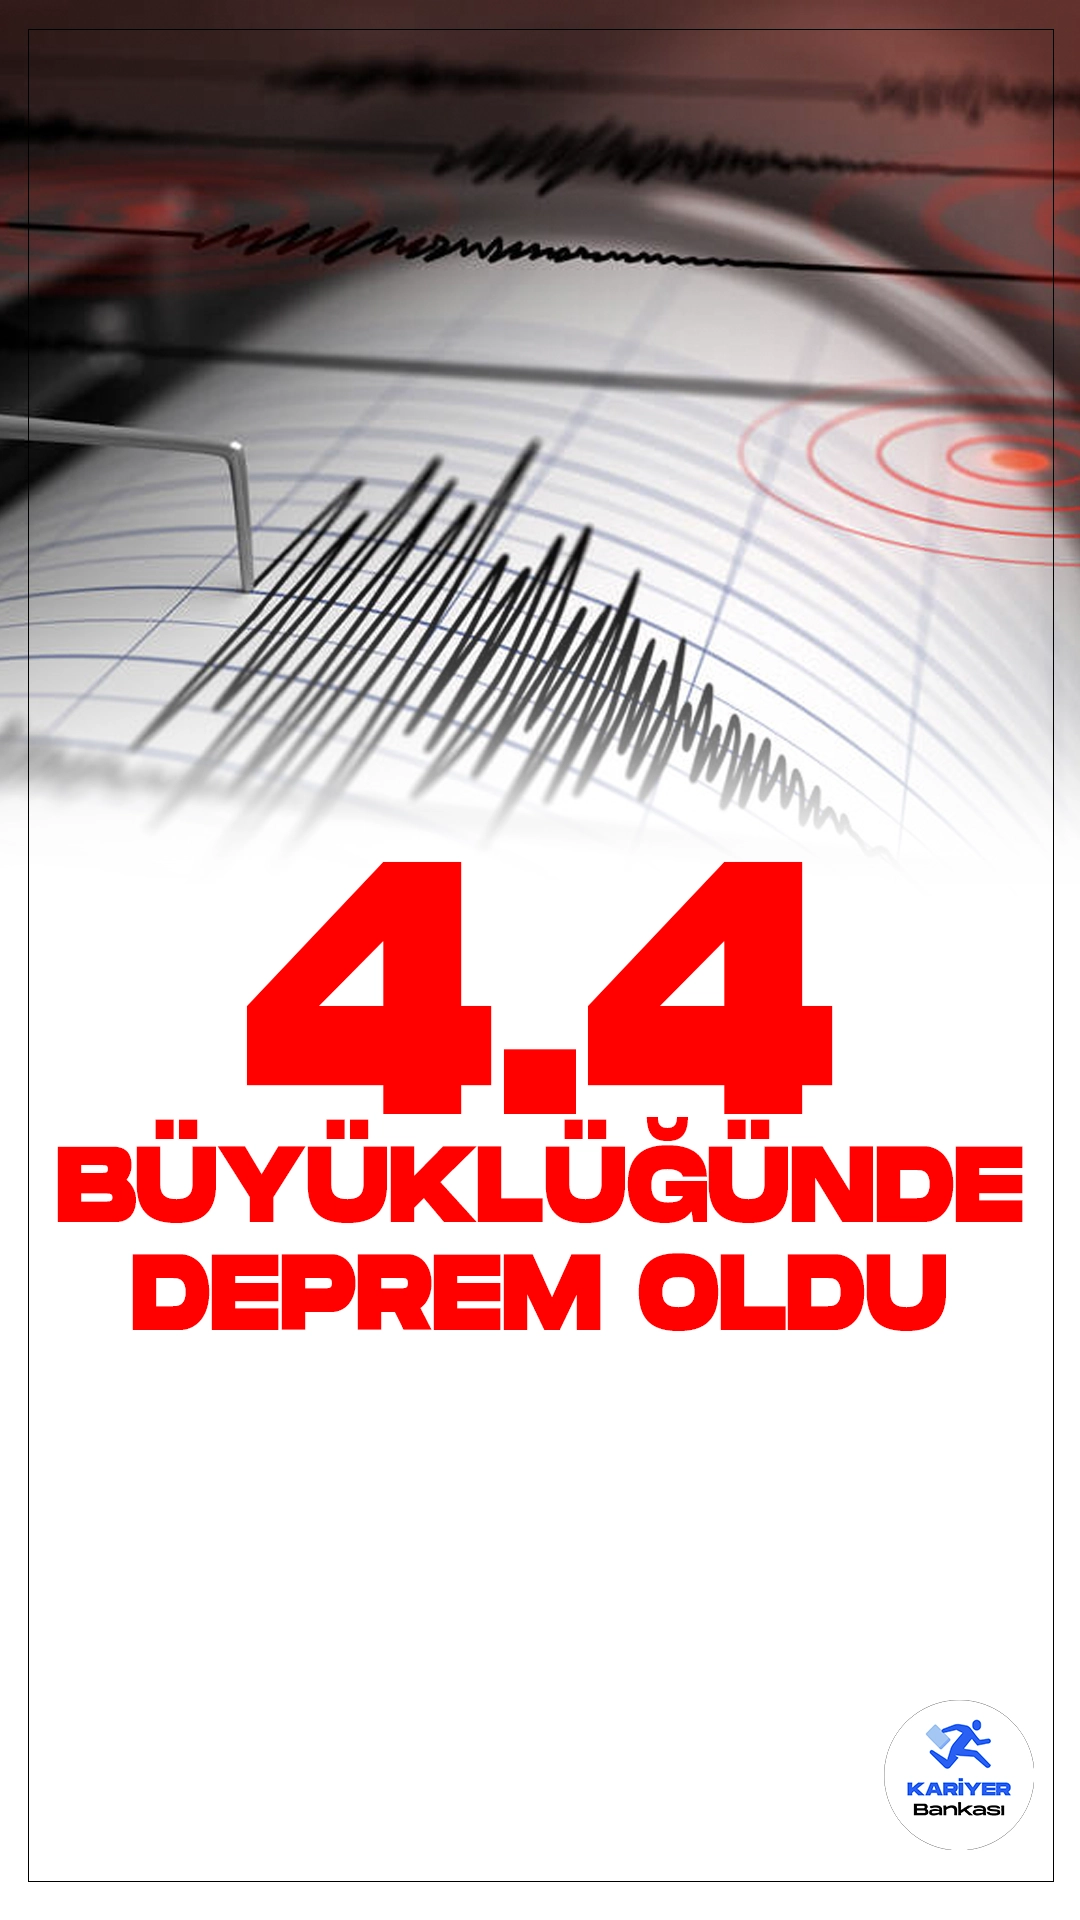 Malatya'da 4.4 Büyüklüğünde Deprem Oldu.İçişleri Bakanlığı Afet ve Acil Durum Yönetimi Başkanlığı Deprem Dairesi tarafından yayımlana son dakika verilerine göre, Malatya'nın Doğanşehir ilçesinde 4.4 büyüklüğünde deprem meydana geldiği kaydedildi.